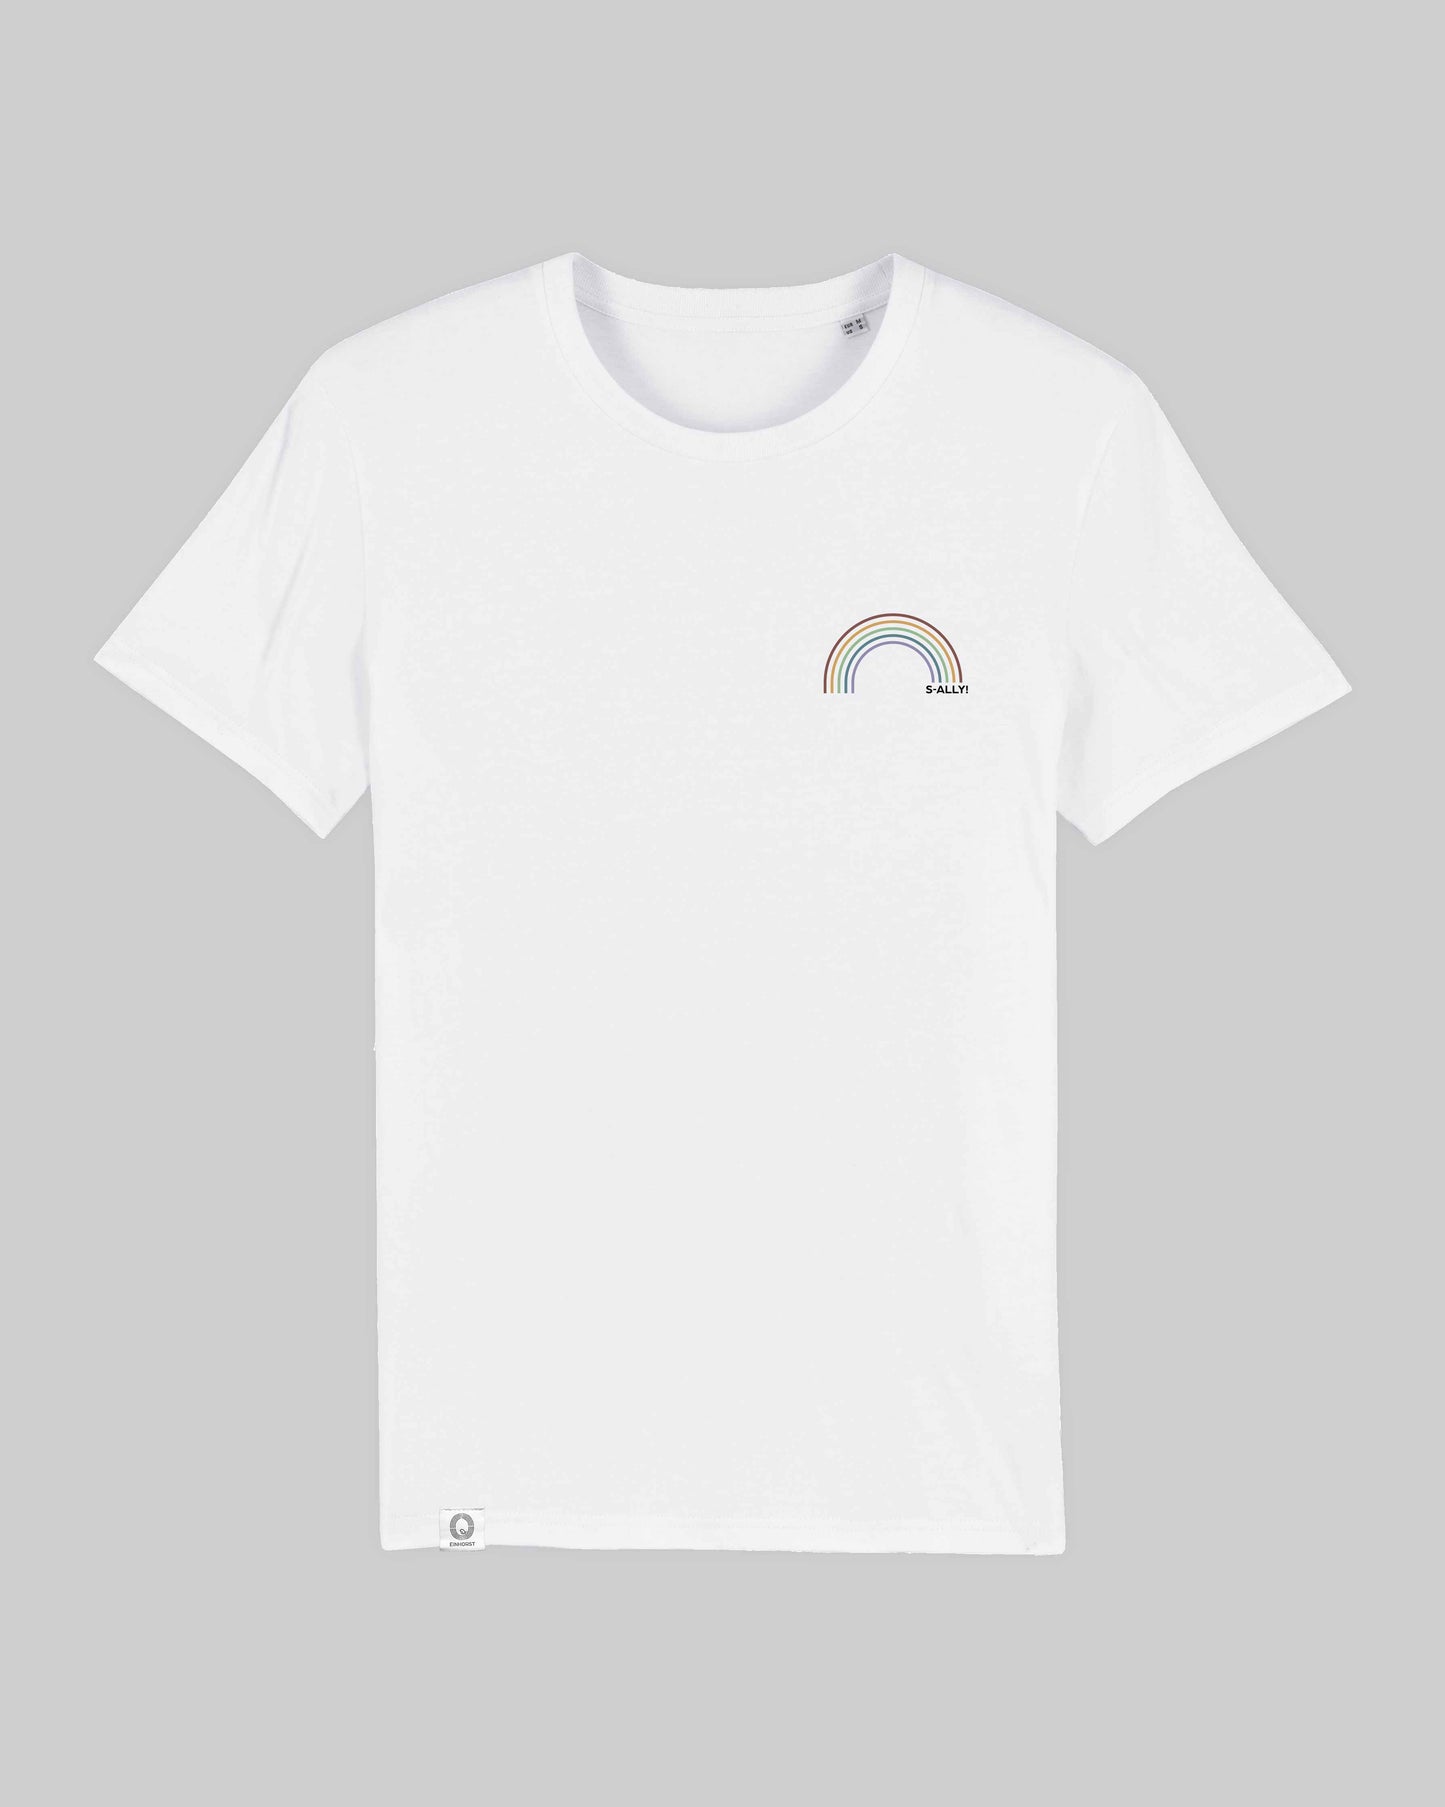 EINHORST® unisex Organic Shirt in Weiß mit dem Motiv "s-ally Regenbogen" in der Kombination bunter Regenbogen mit schwarzer Schrift, Bild von Shirt von vorne